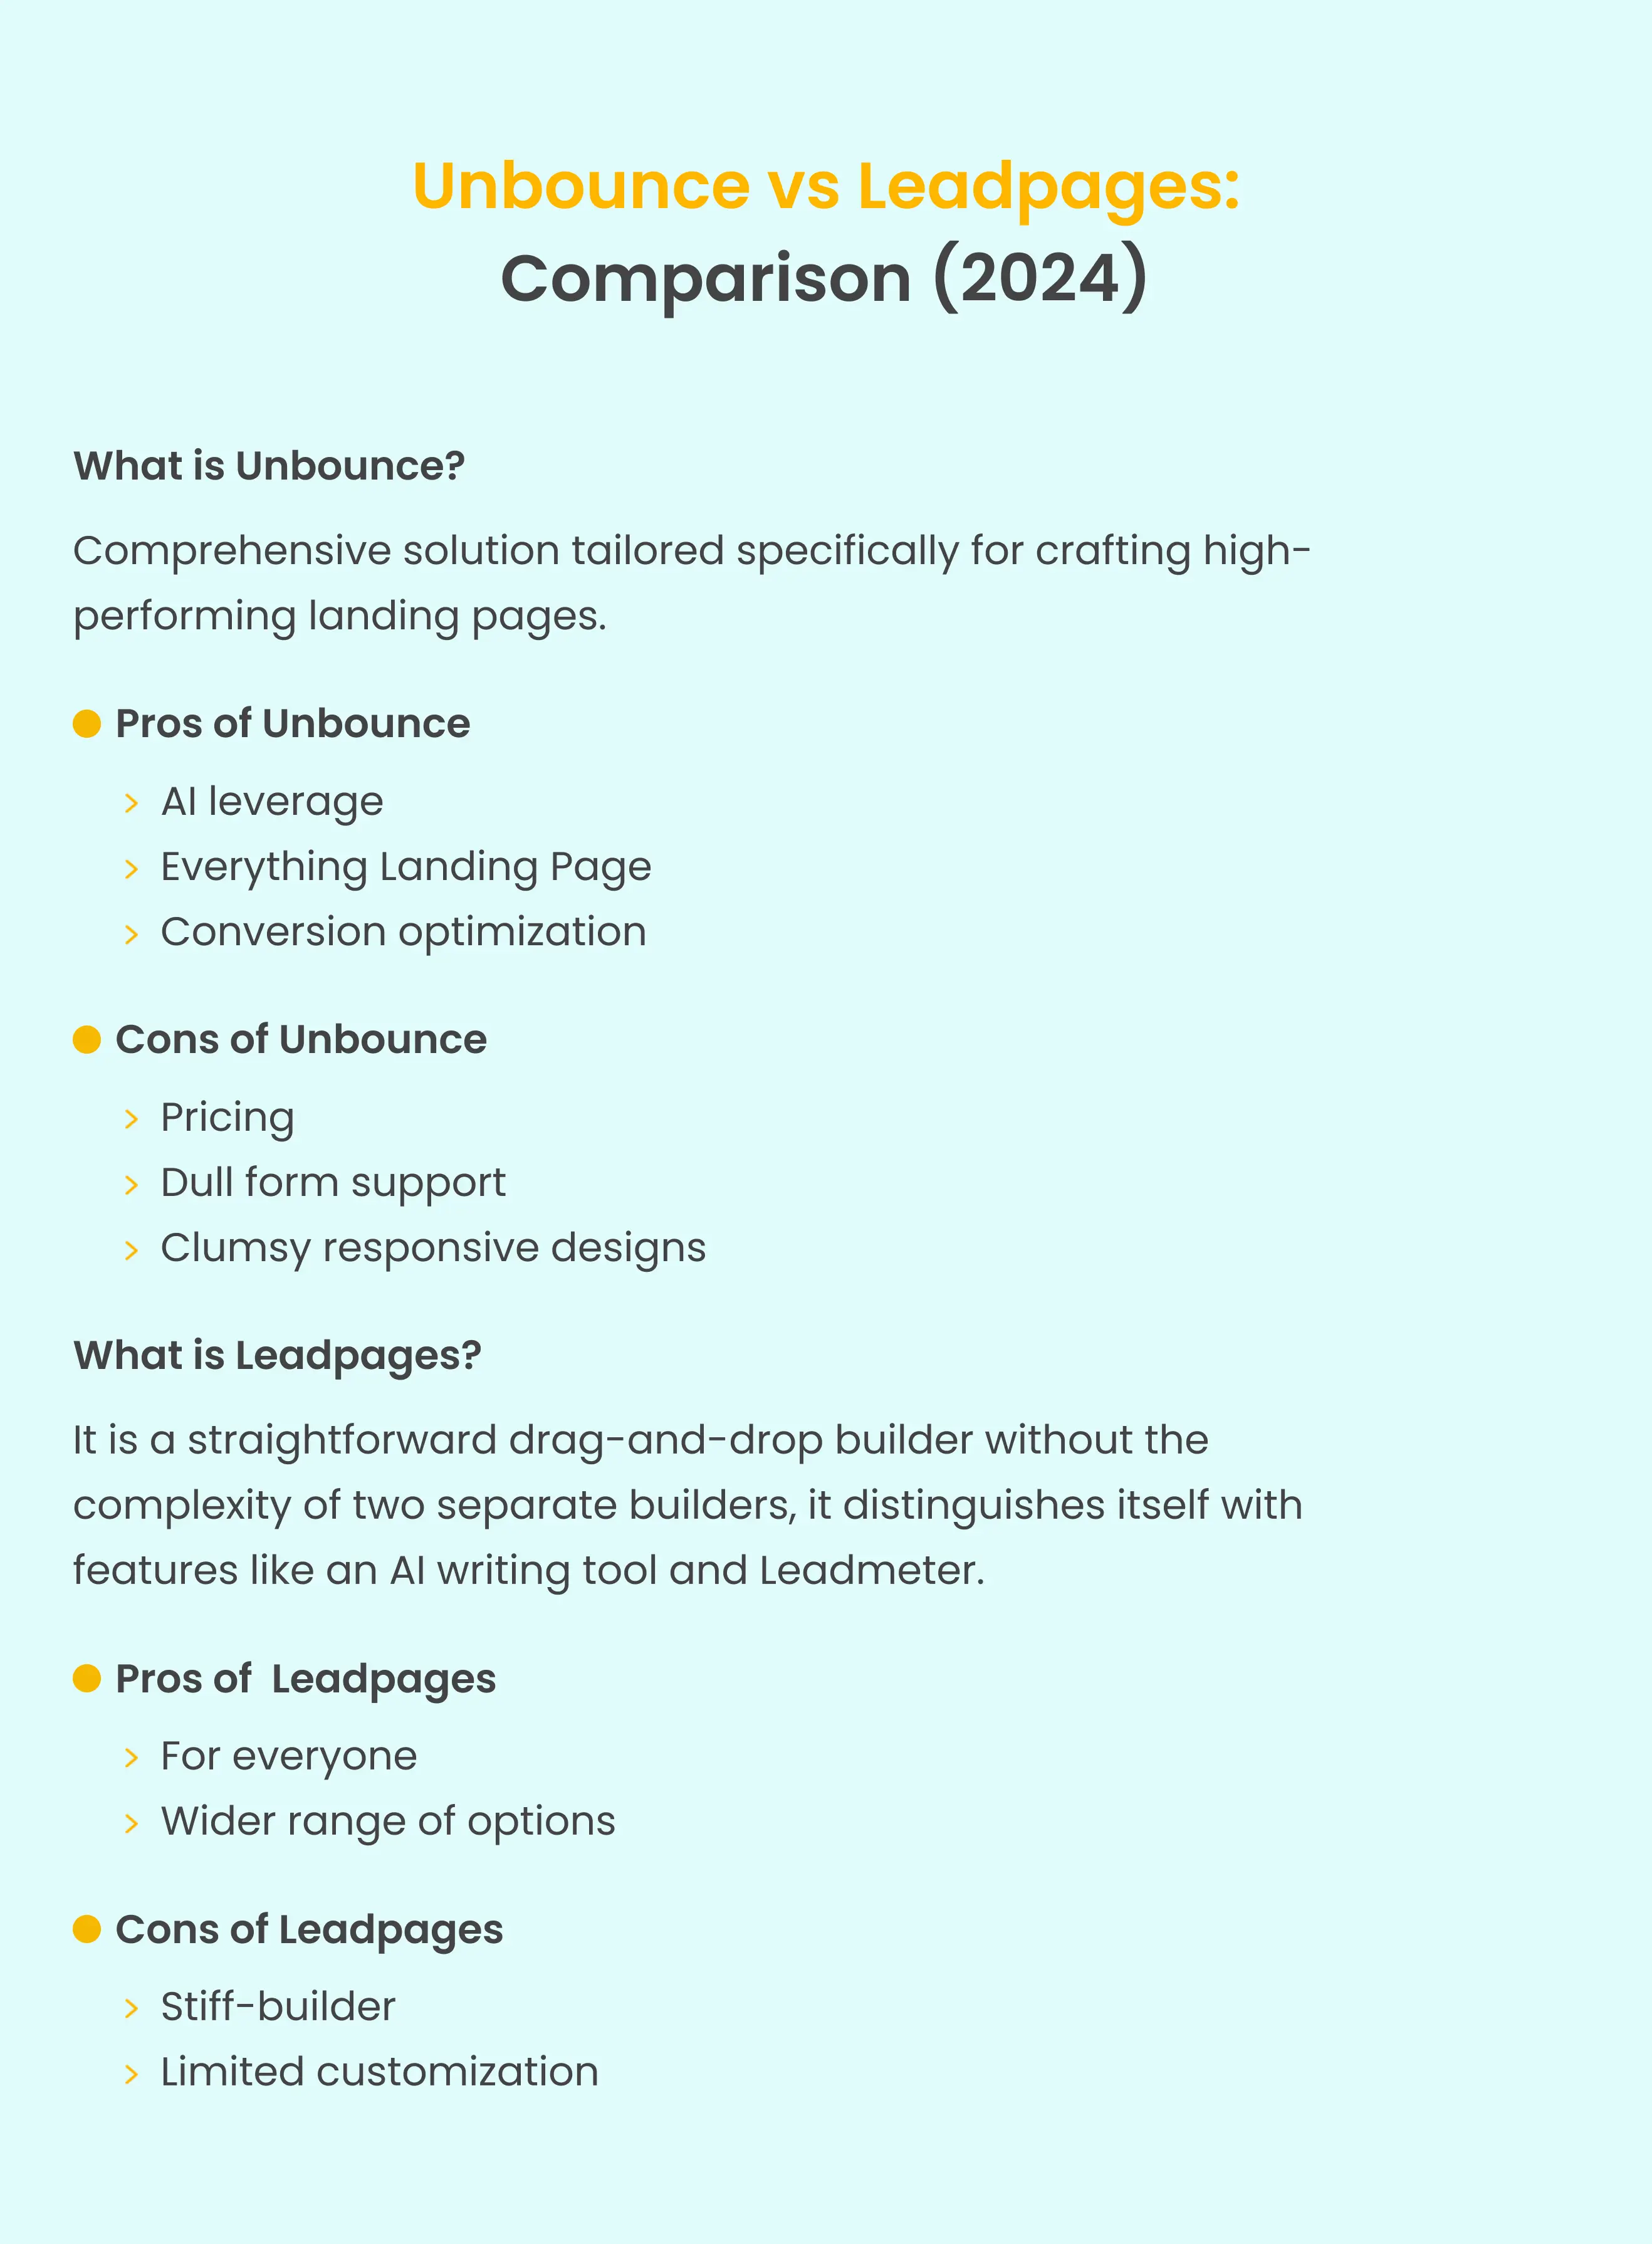 unbounce-vs-leadpages-comparison-summary.webp